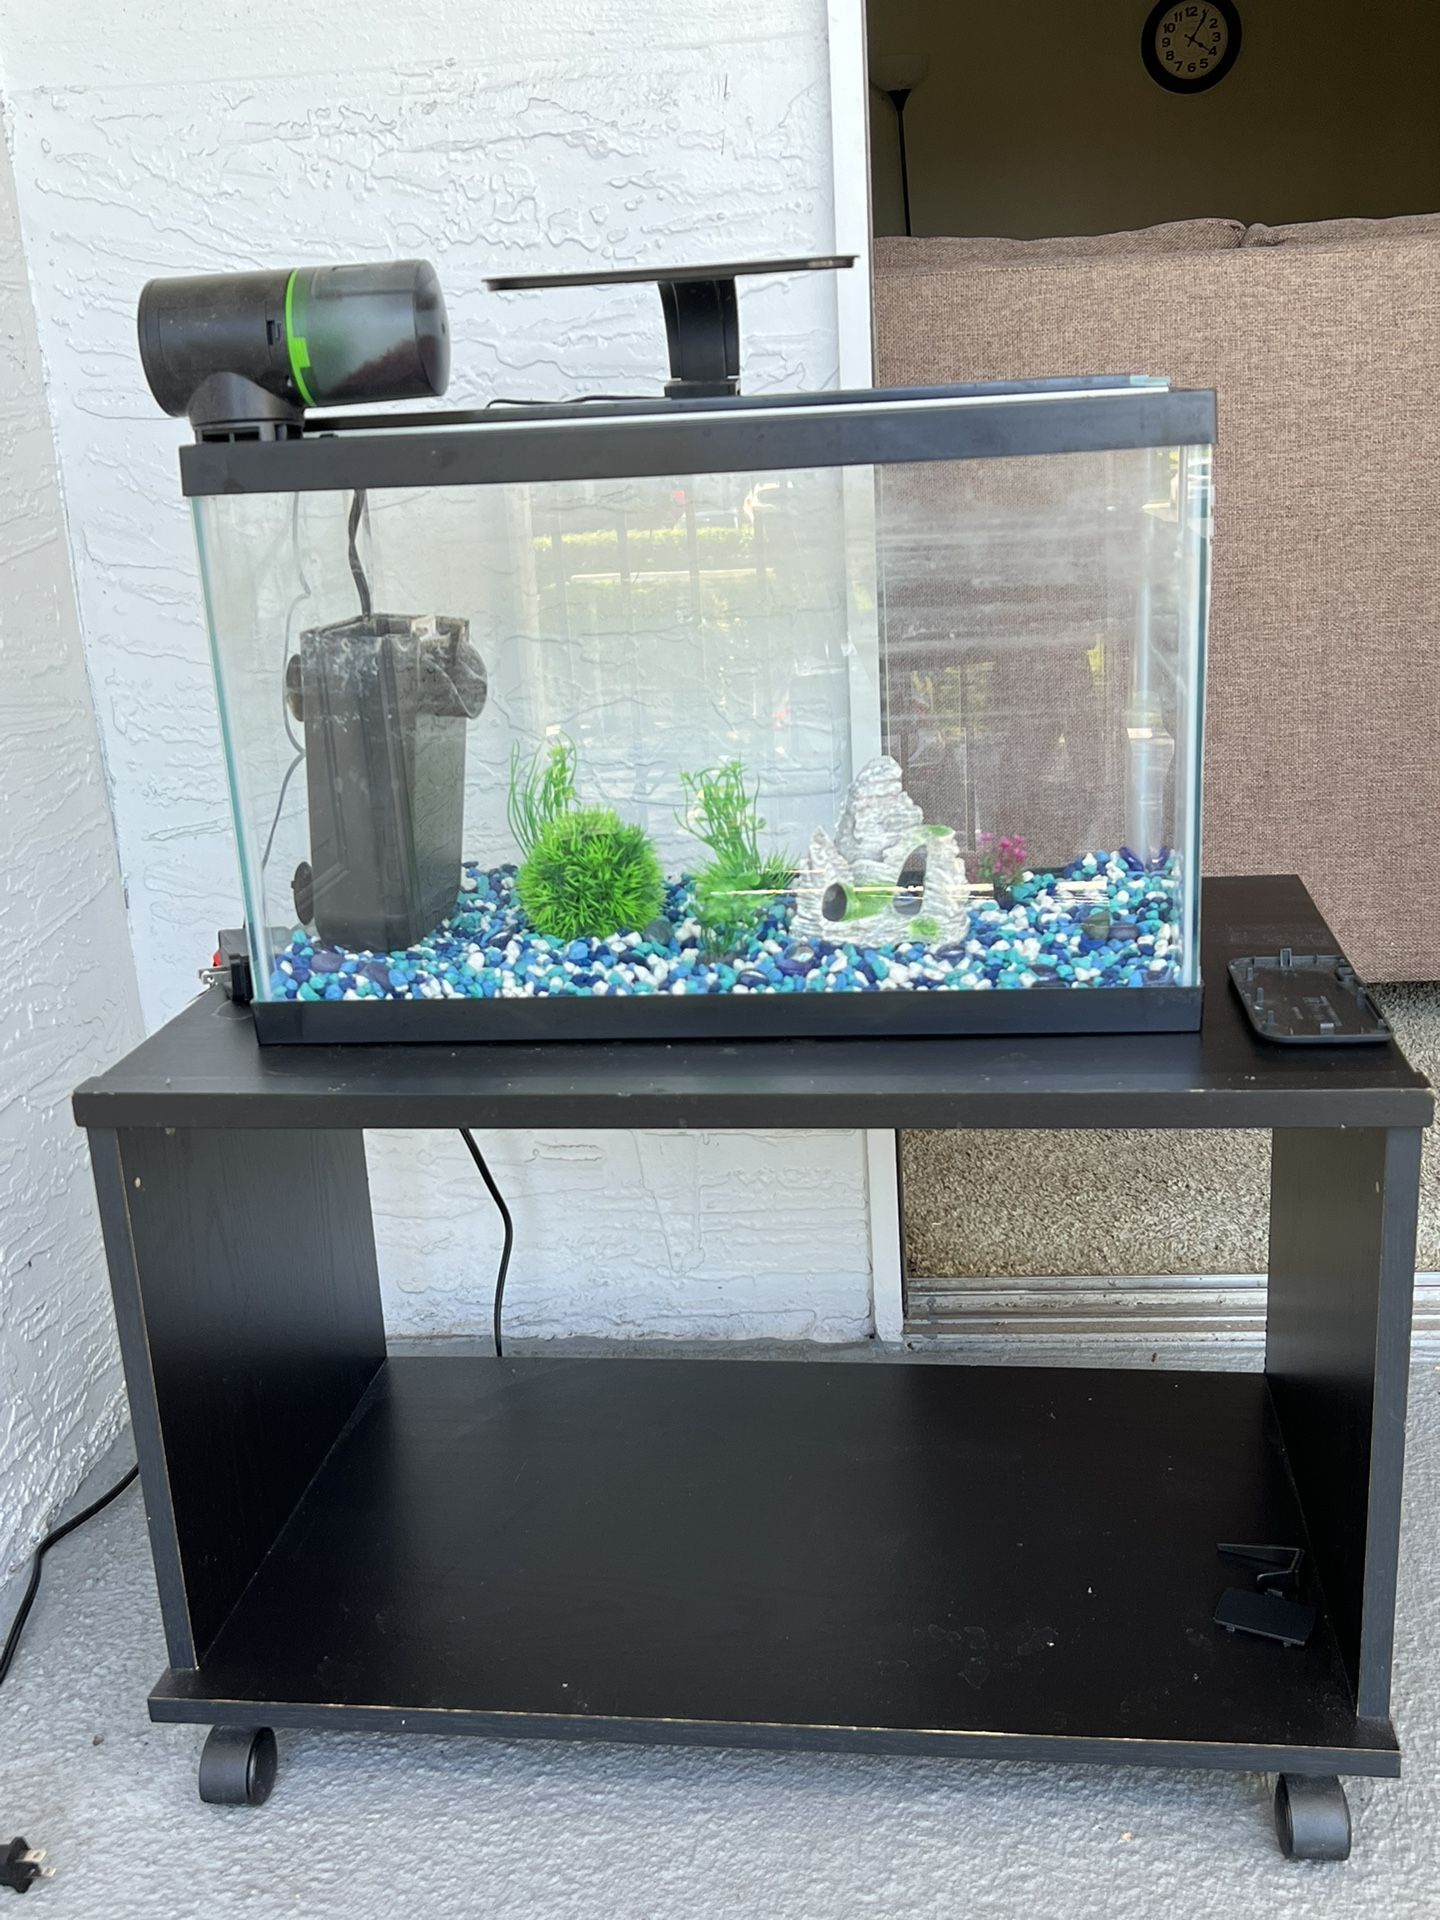 $60 Aquarium Full Set Up With Automatic Food Dispenser